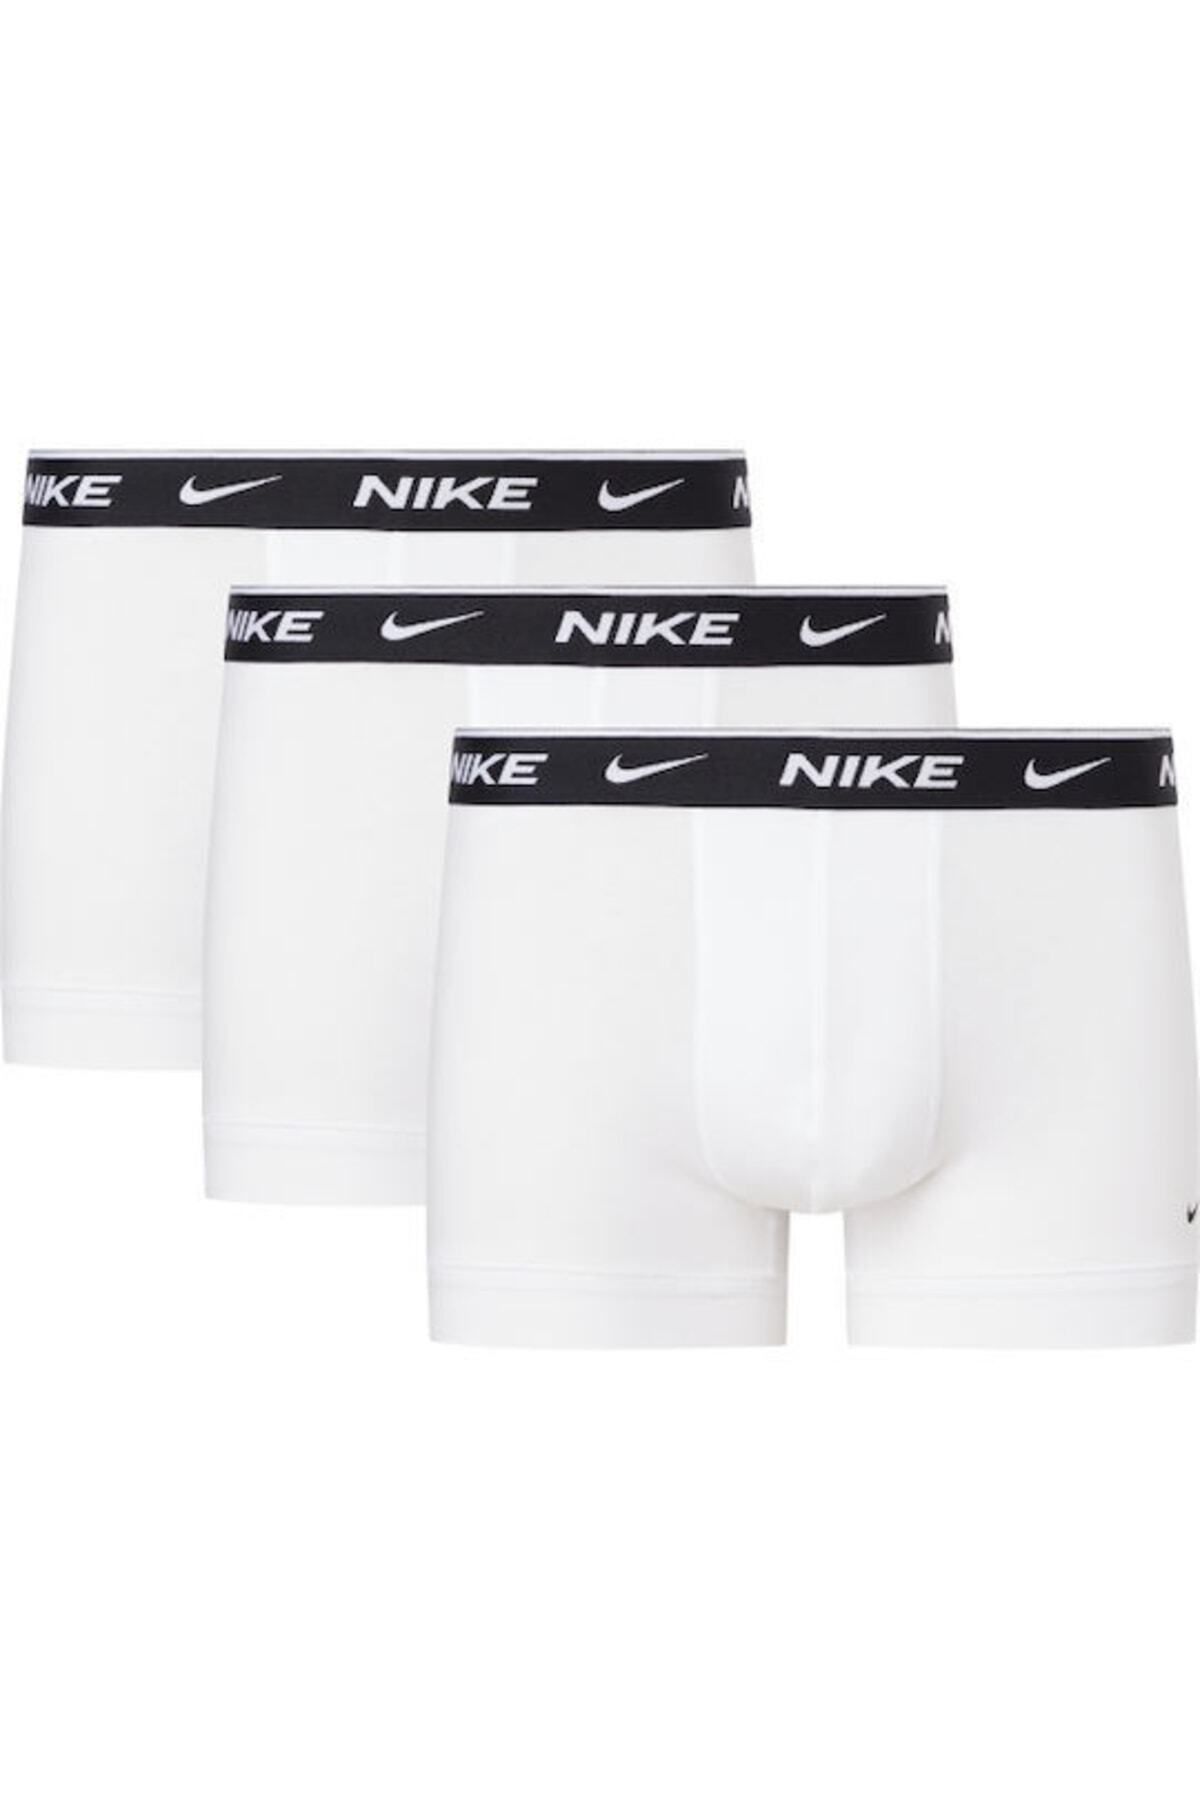 Nike Erkek Marka Logolu Elastik Bantlı Günlük Kullanıma Uygun Beyaz Boxer 0000ke1008-med